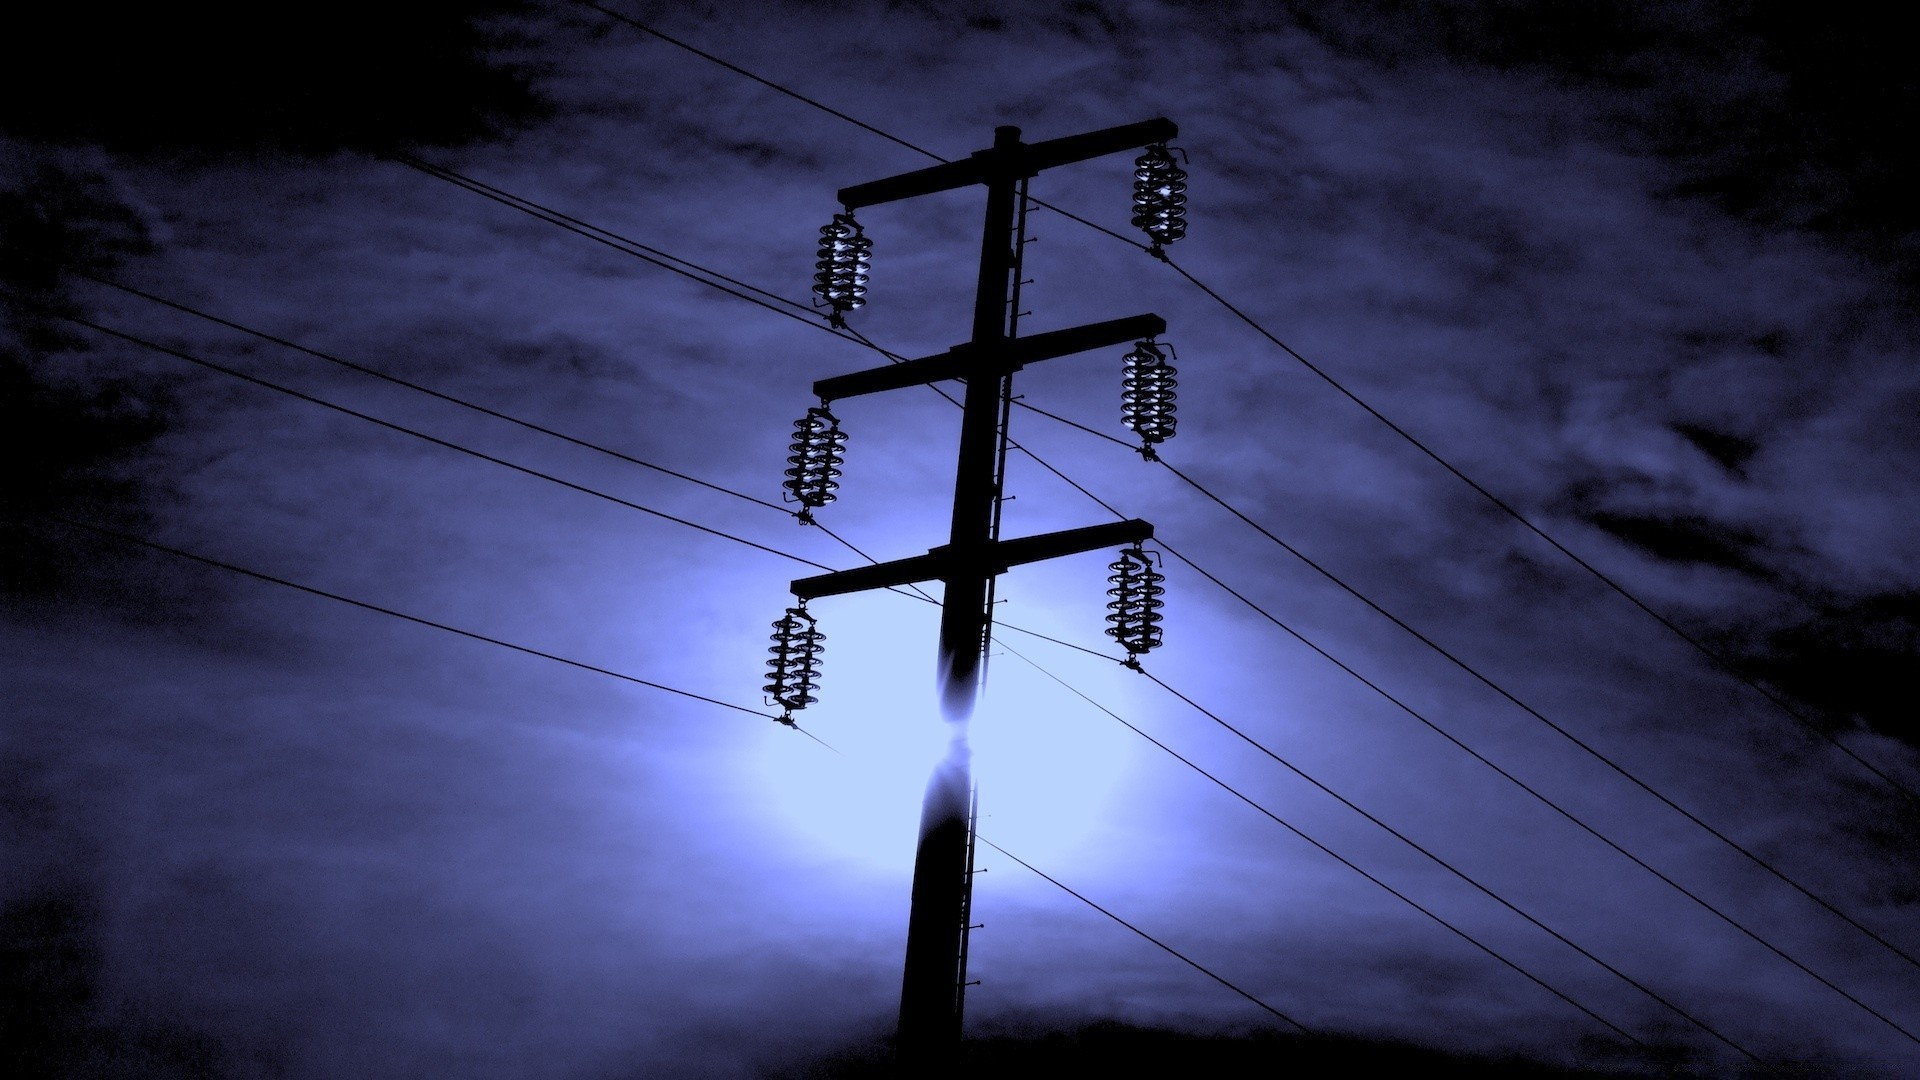 небо электричество напряжение провода мощность энергии небо распределение вольт опасность высокая линия тока поставка передача башня стресс сталь пилон сетки